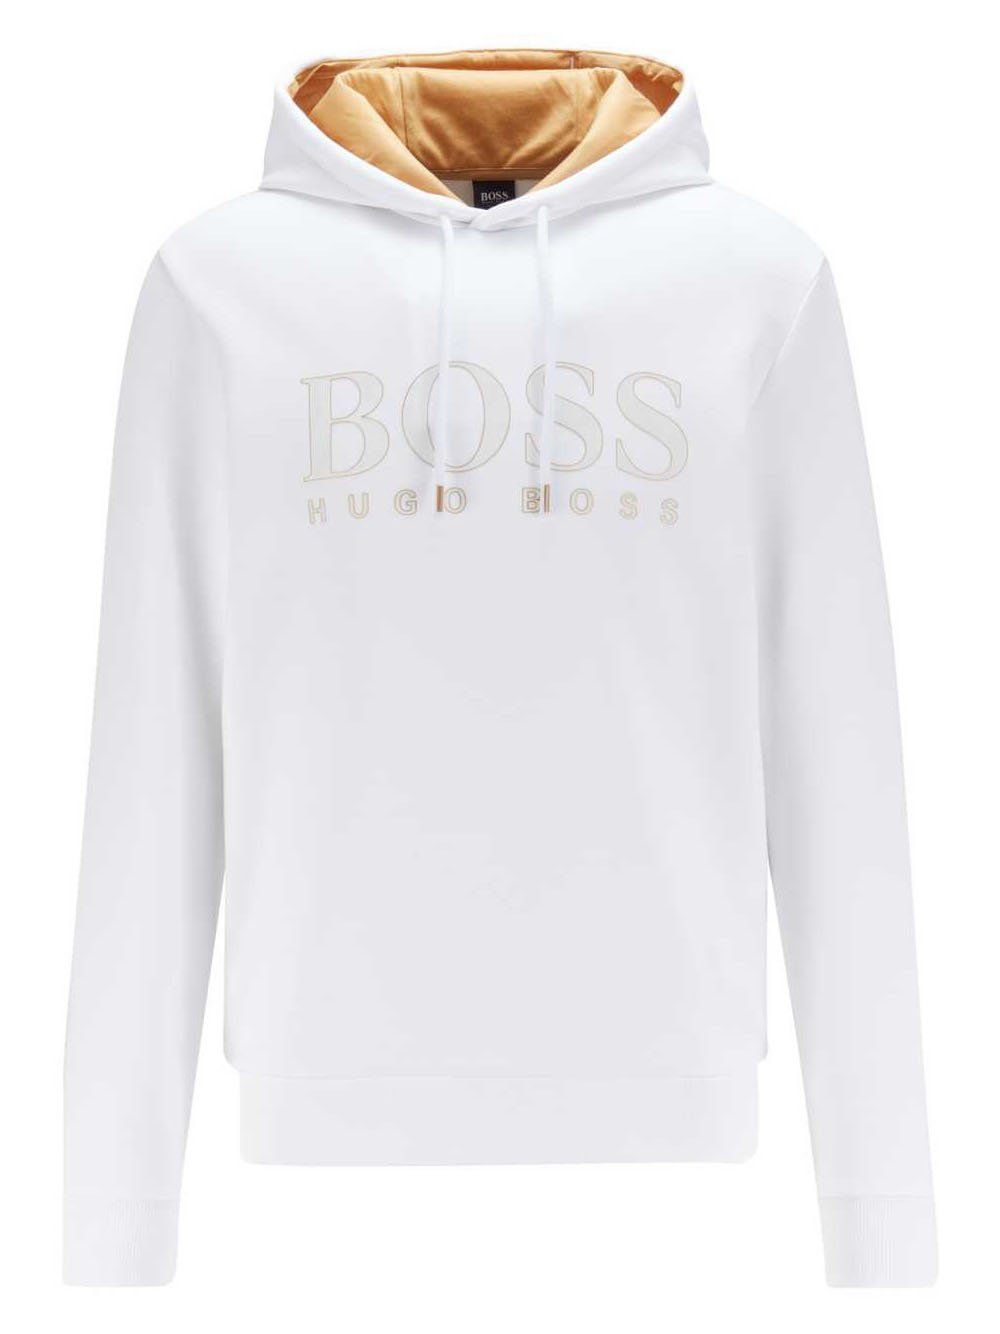 BOSS Logo Sweatshirt with Gold Lining White - MAISONDEFASHION.COM